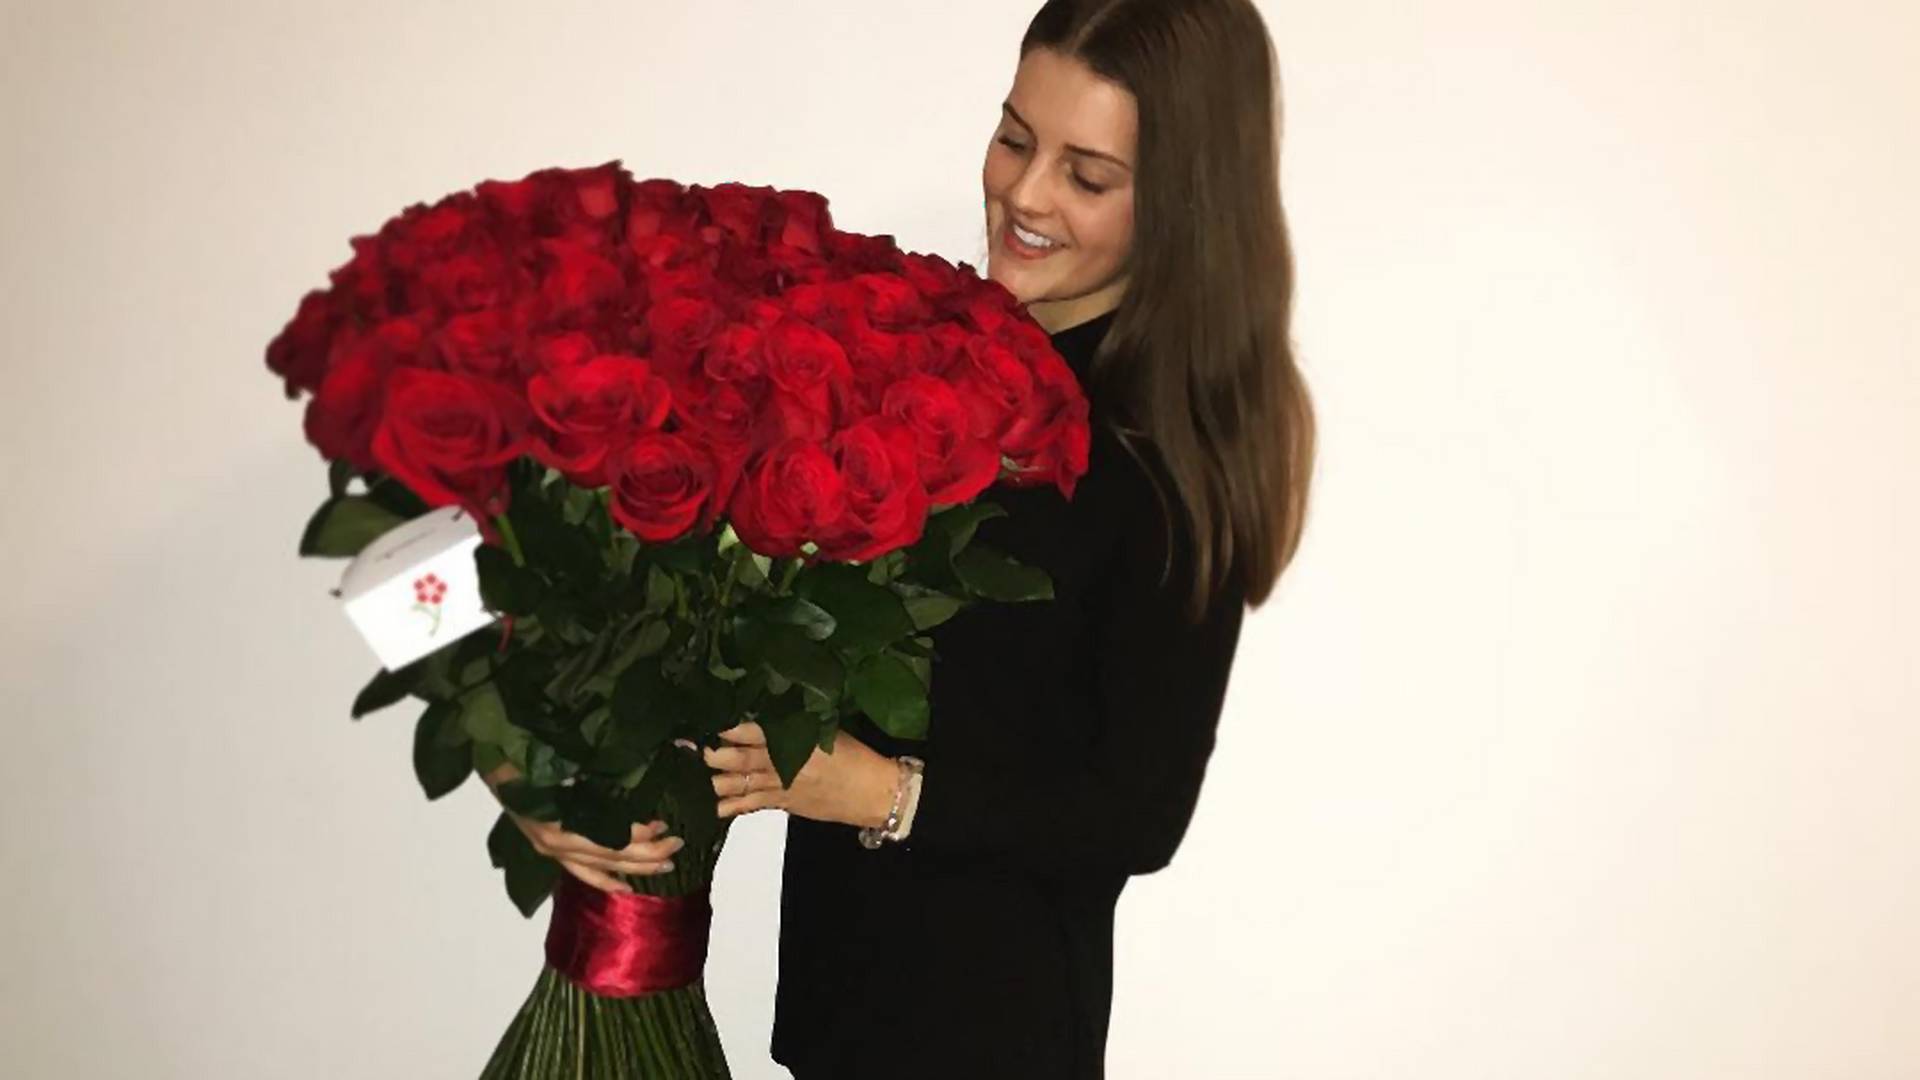 Możesz wynająć olbrzymi bukiet róż tylko po to, żeby zrobić sobie z nim zdjęcie i wzbudzić zazdrość u innych